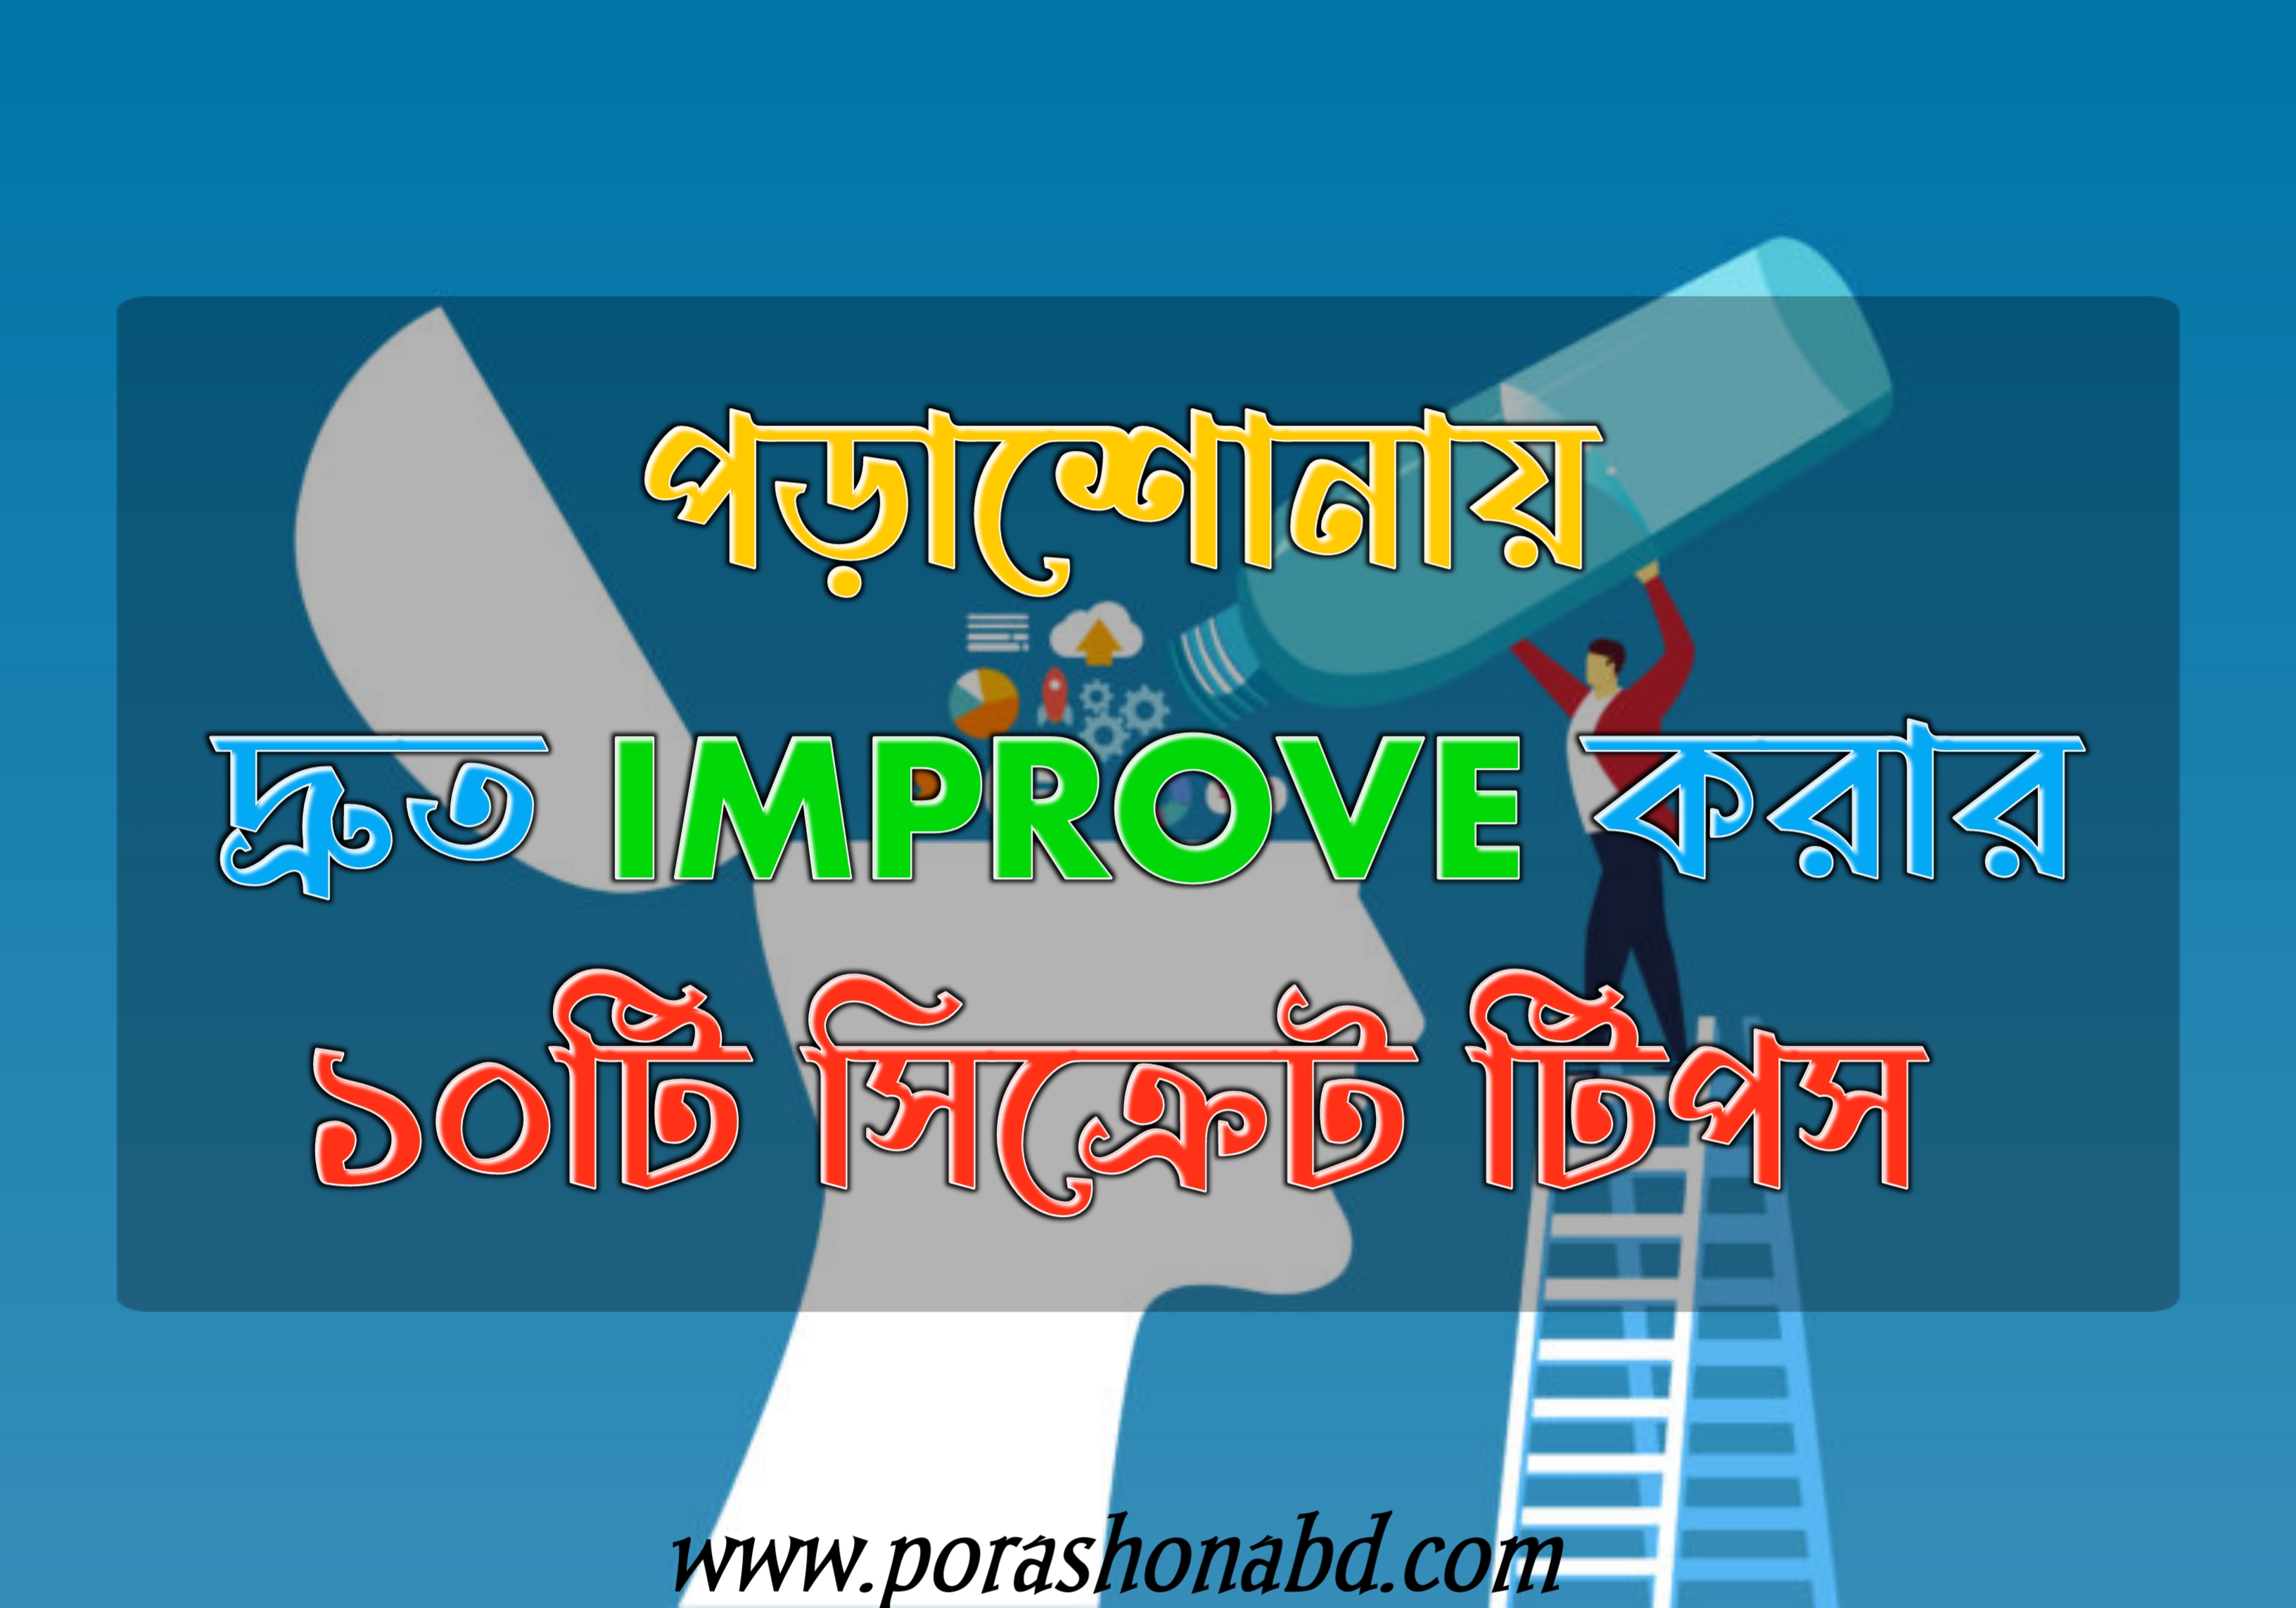 পড়াশোনায় কিভাবে দ্রুত improve করবো - Porashonabd.com